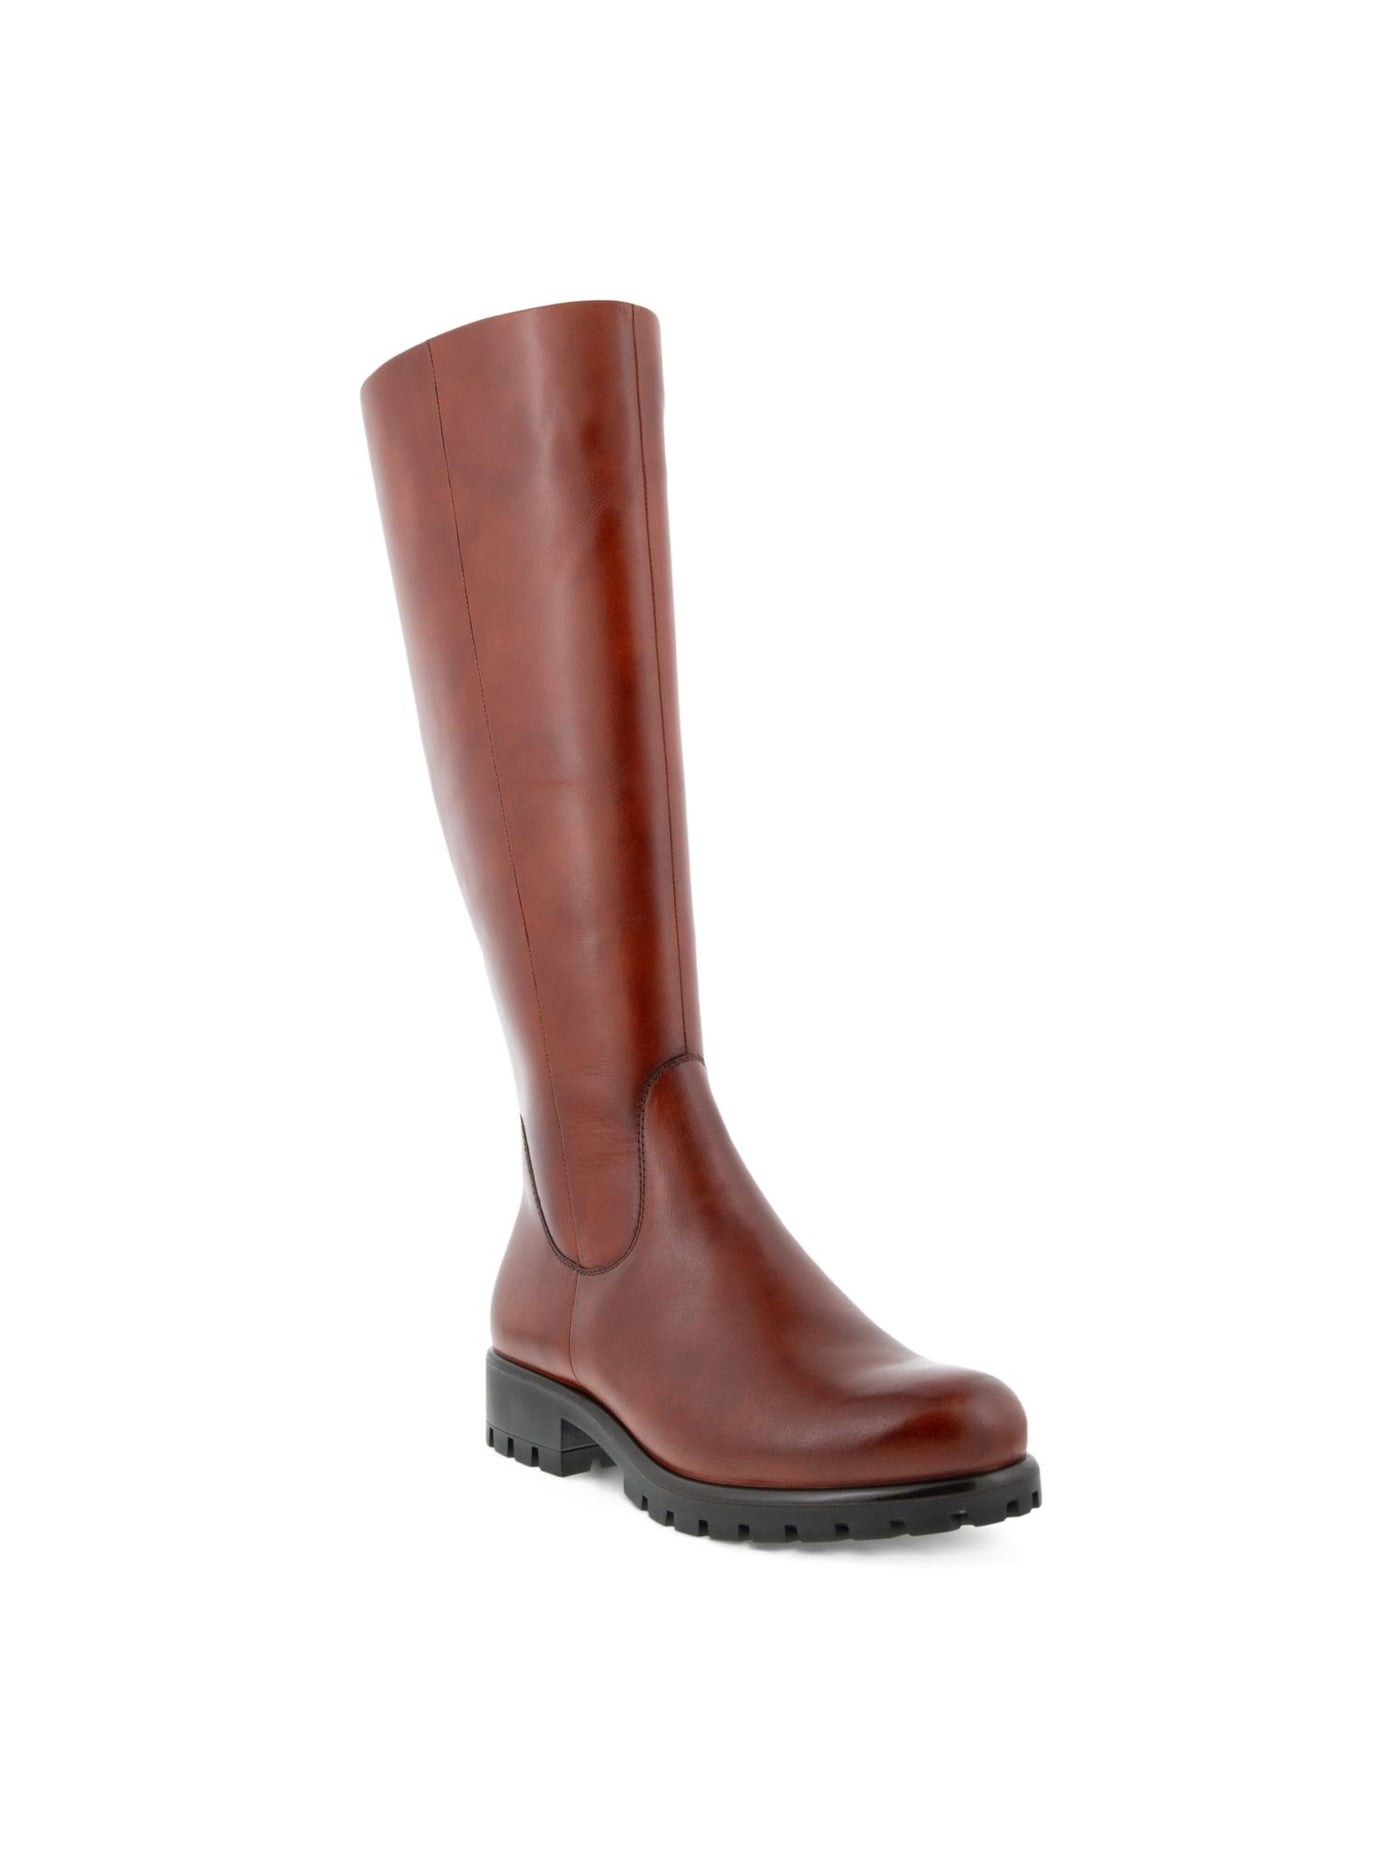 ECCO Womens Cognac Brown Back Zip For Calf Width Adjustment Water Resistant Modtray Round Toe Block Heel Zip-Up Leather Boots Shoes 5-5.5